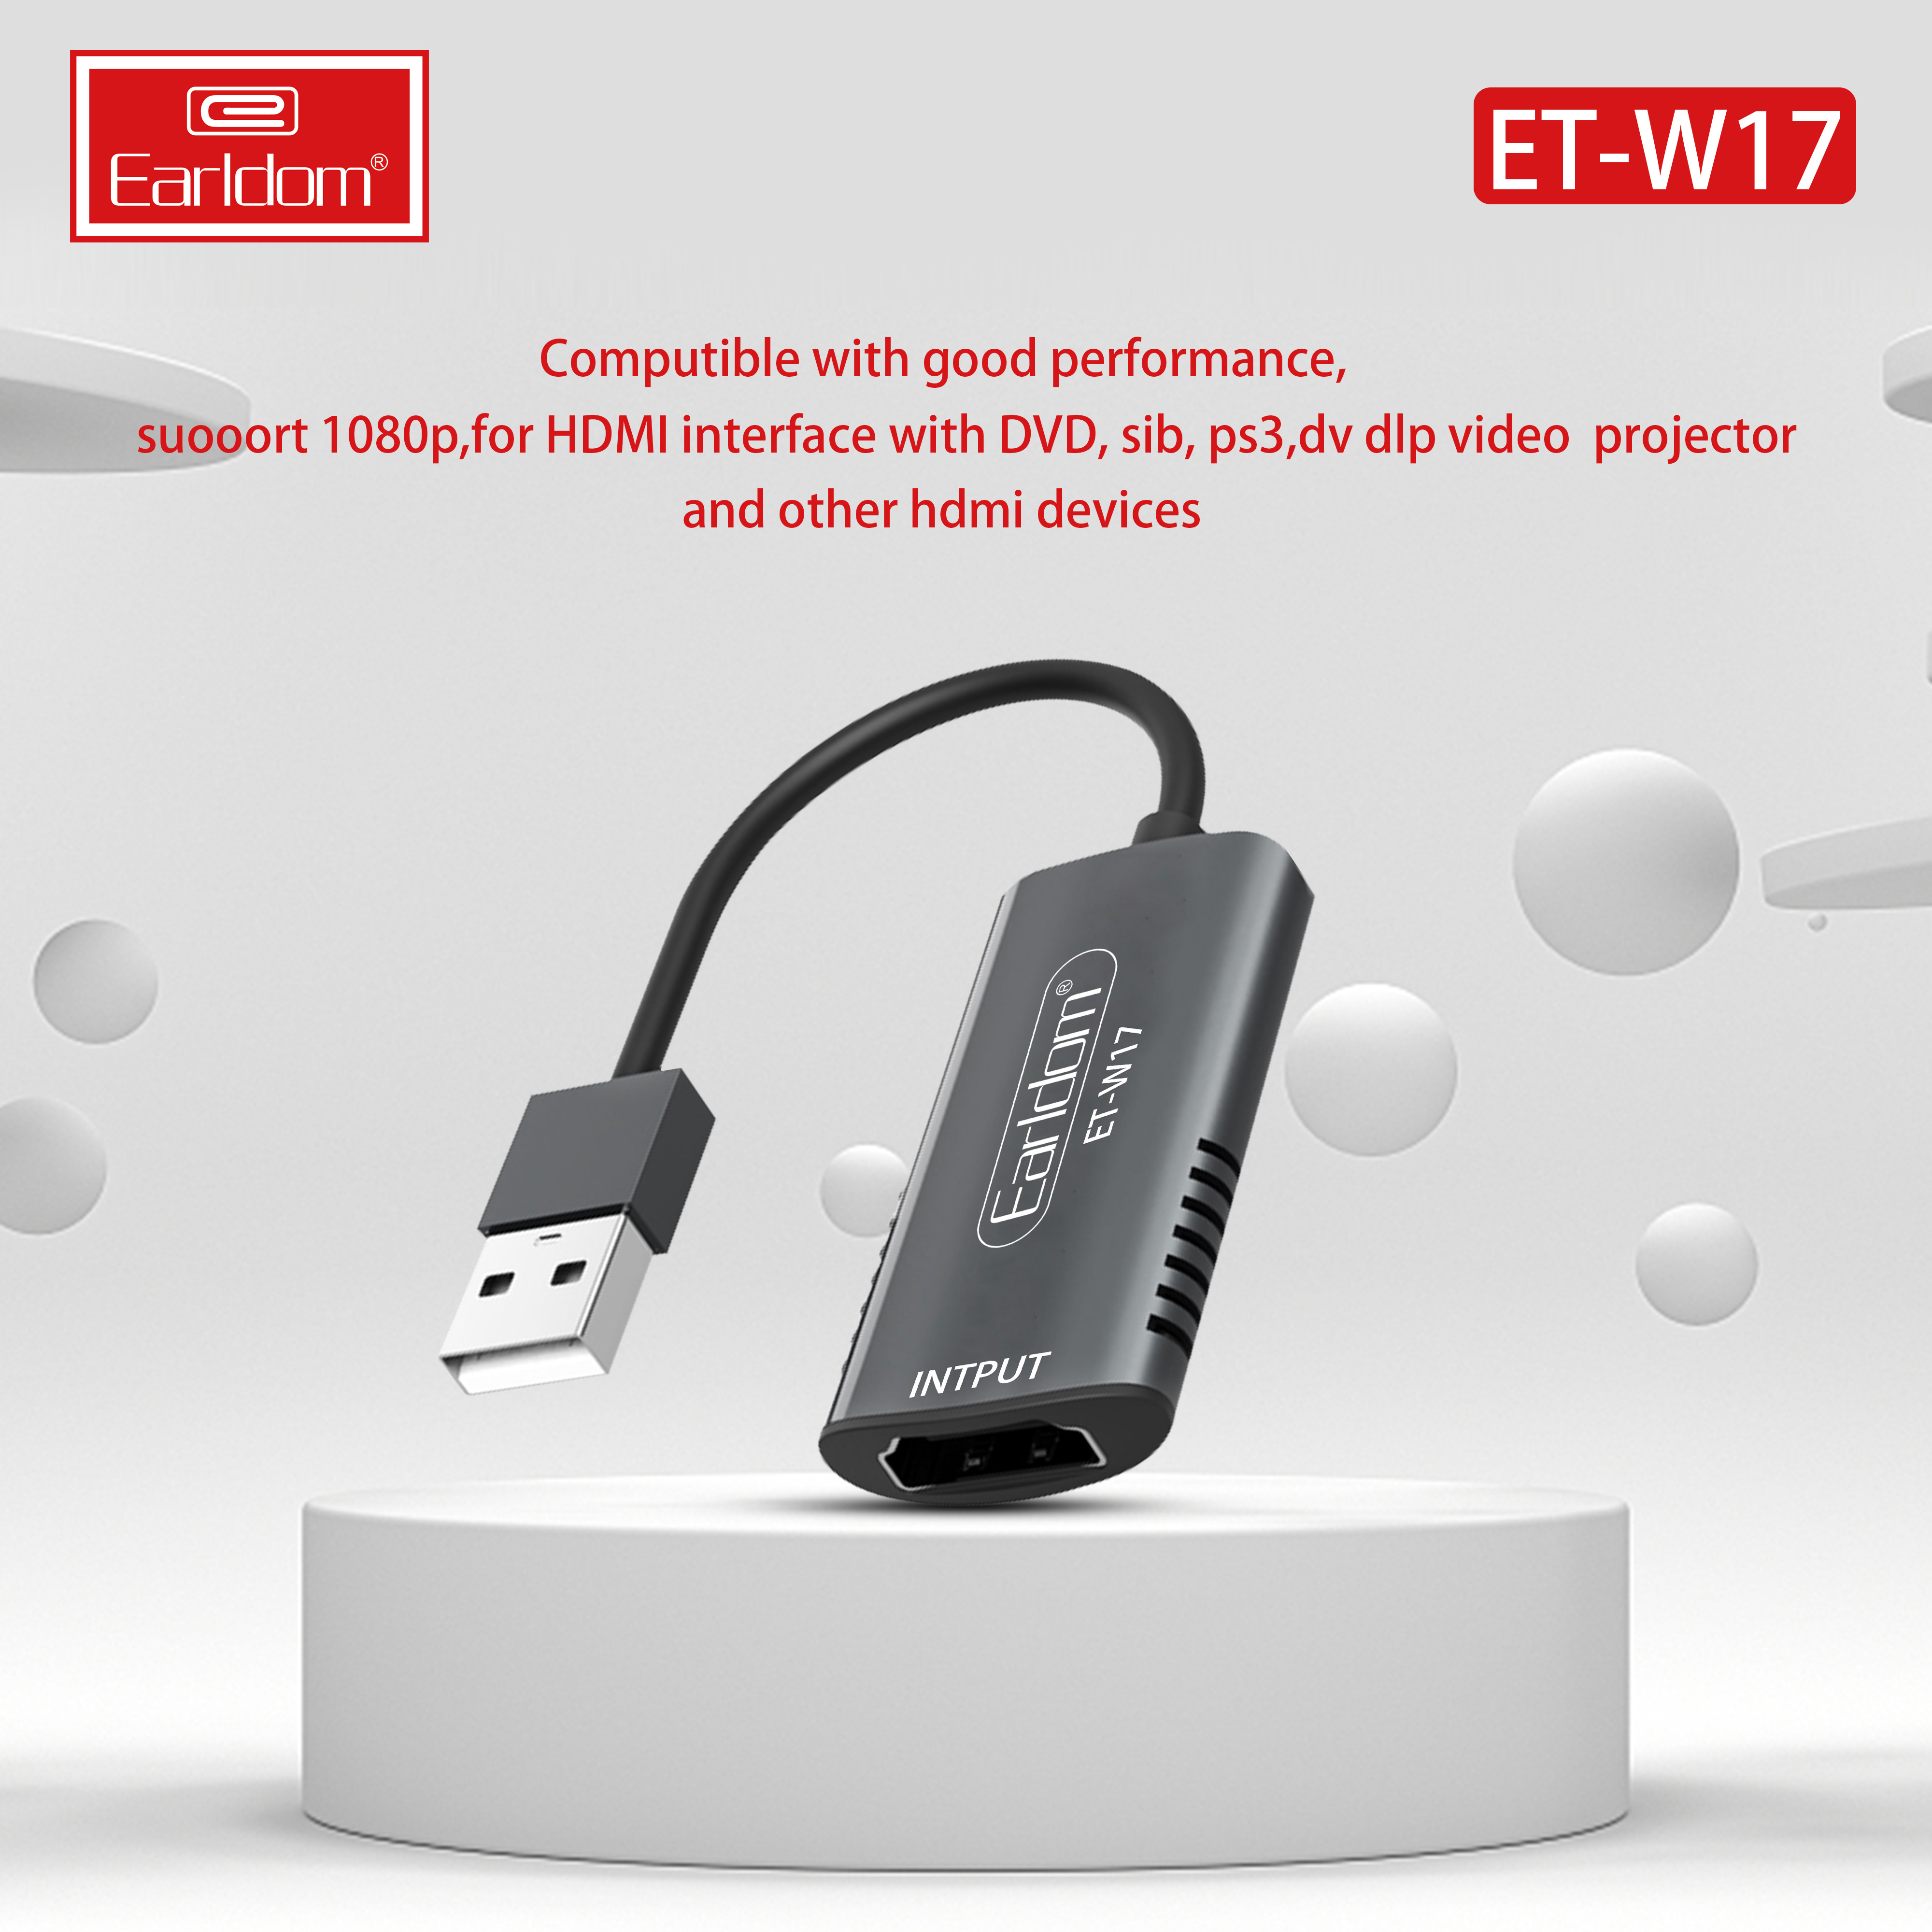 Cáp HDMI to USB 3.0 Video Capture Earldom ET-W17 - Hỗ Trợ Live Stream, Ghi Hình Từ Điện Thoại, Camera, PS4, XBOX - Hàng Chính Hãng